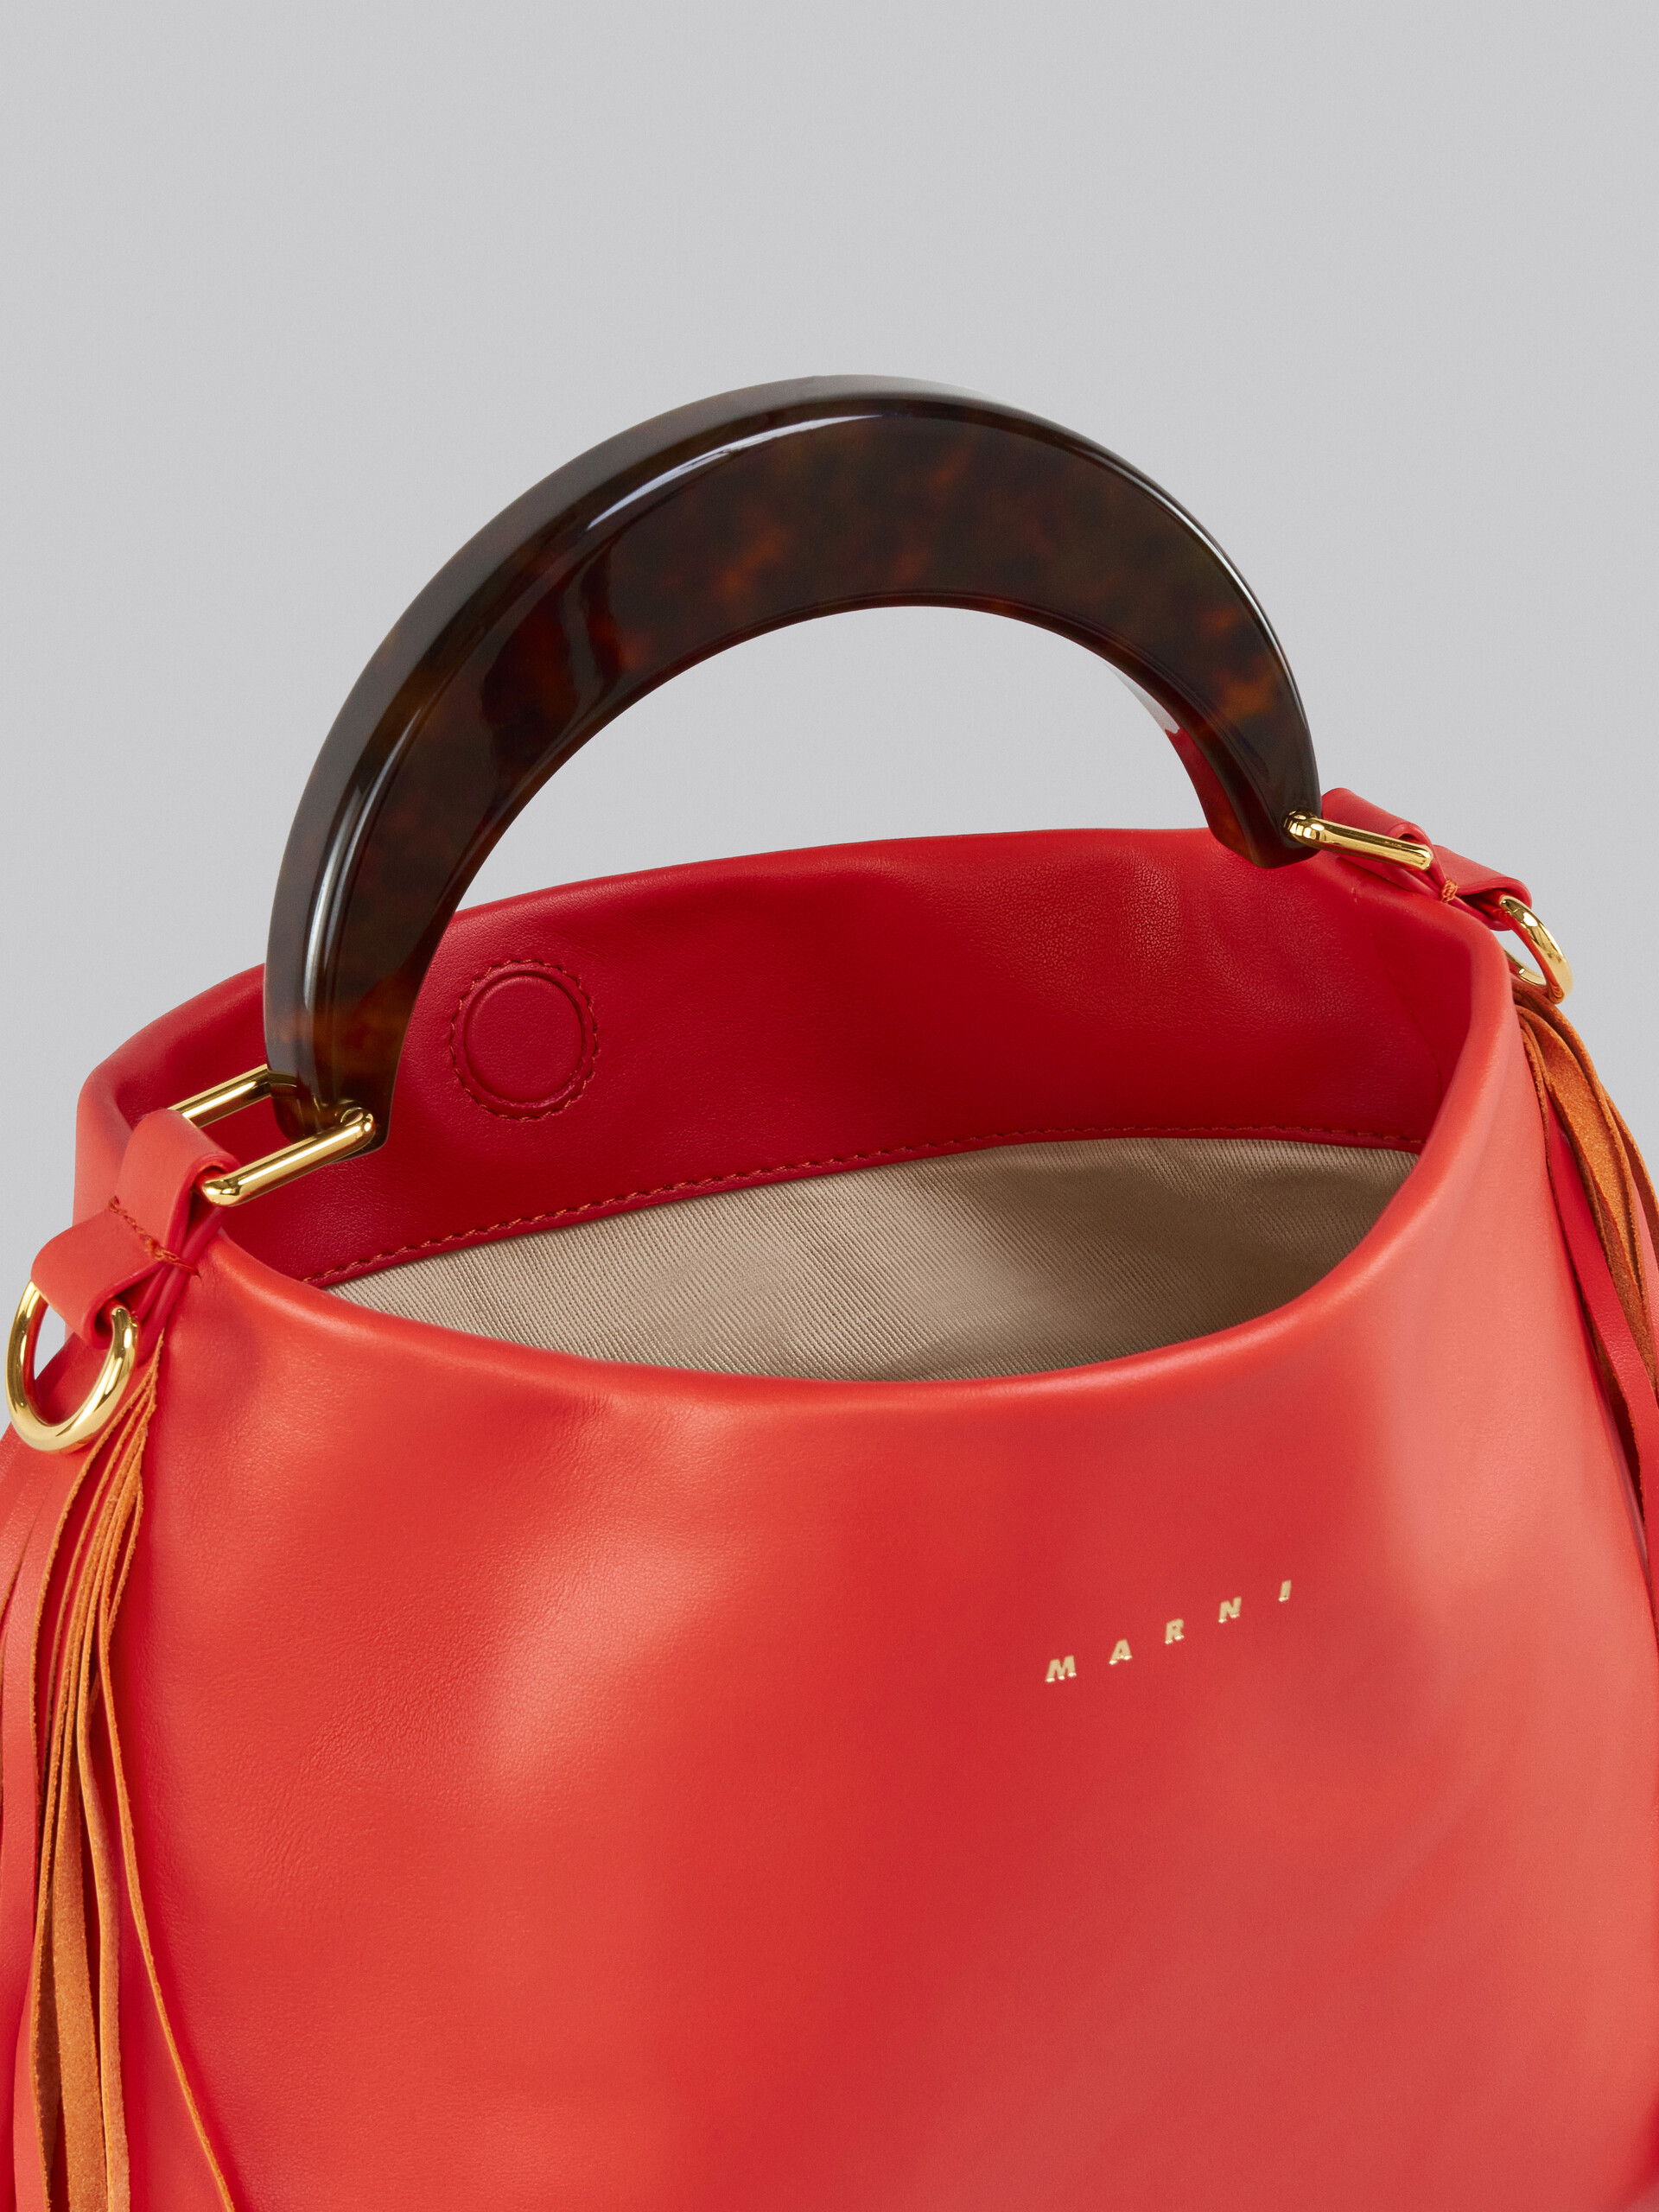 Venice Small Bag in orange leather with fringes - Shoulder Bag - Image 4